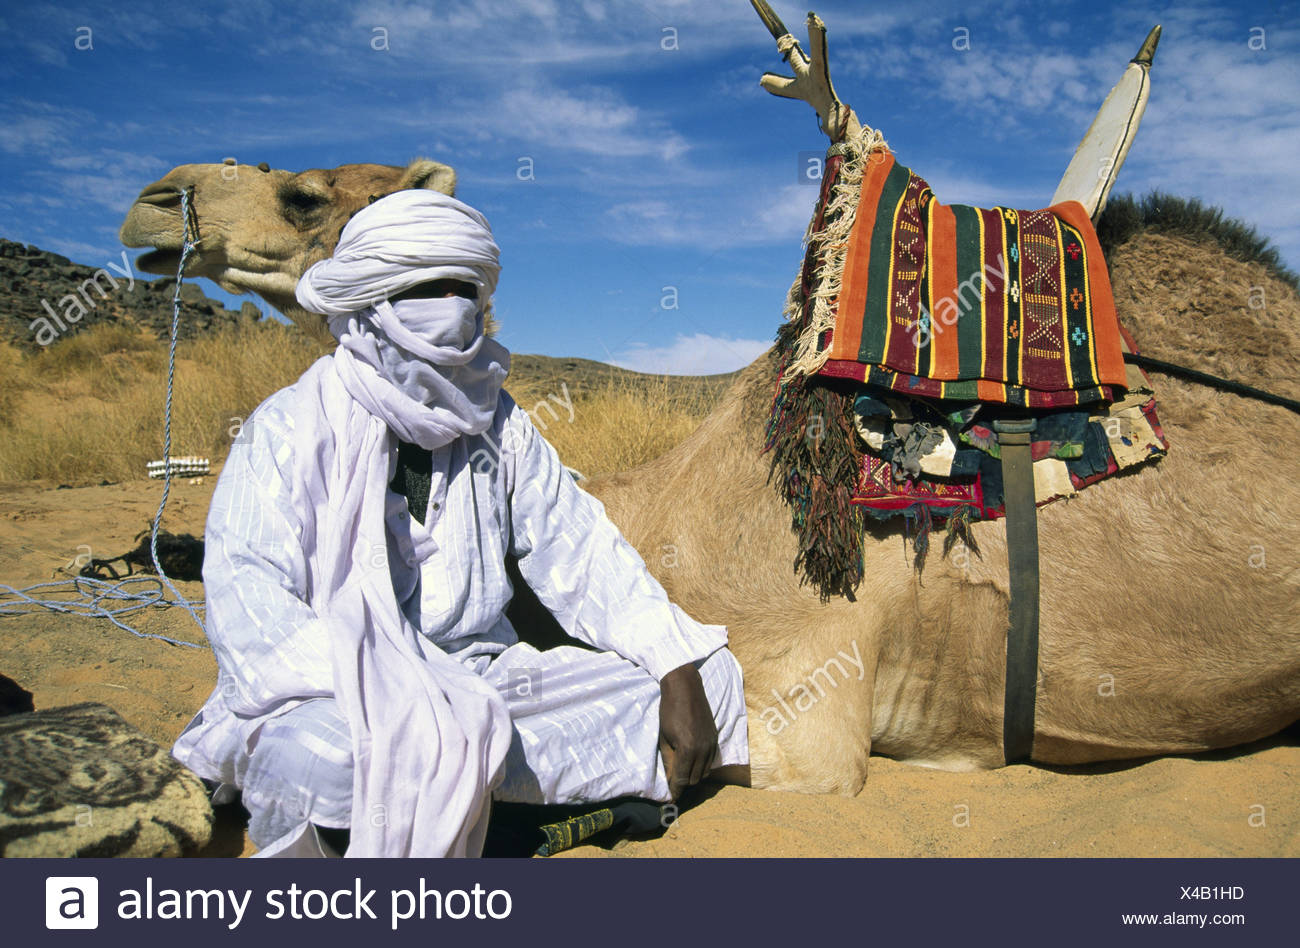 Tuareg Libya Africa local man camels nomadic people nomad nomads ...